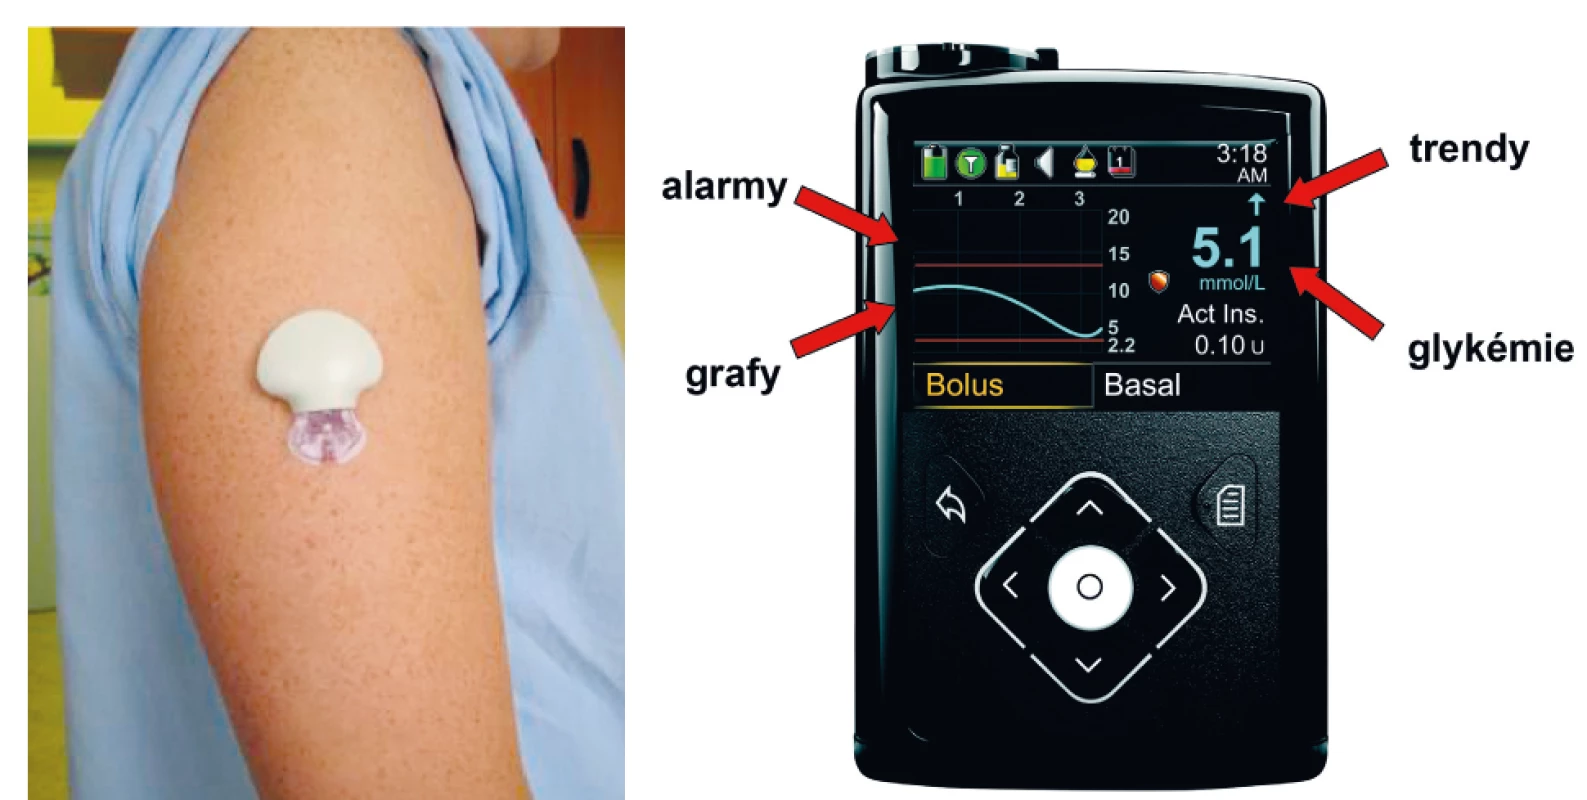 Senzor pro kontinuální monitorování glykémie zavedený subkutánně (A), přijímač (displej inzulinové pumpy) se základními
informacemi o aktuální dynamice glykémií (B).